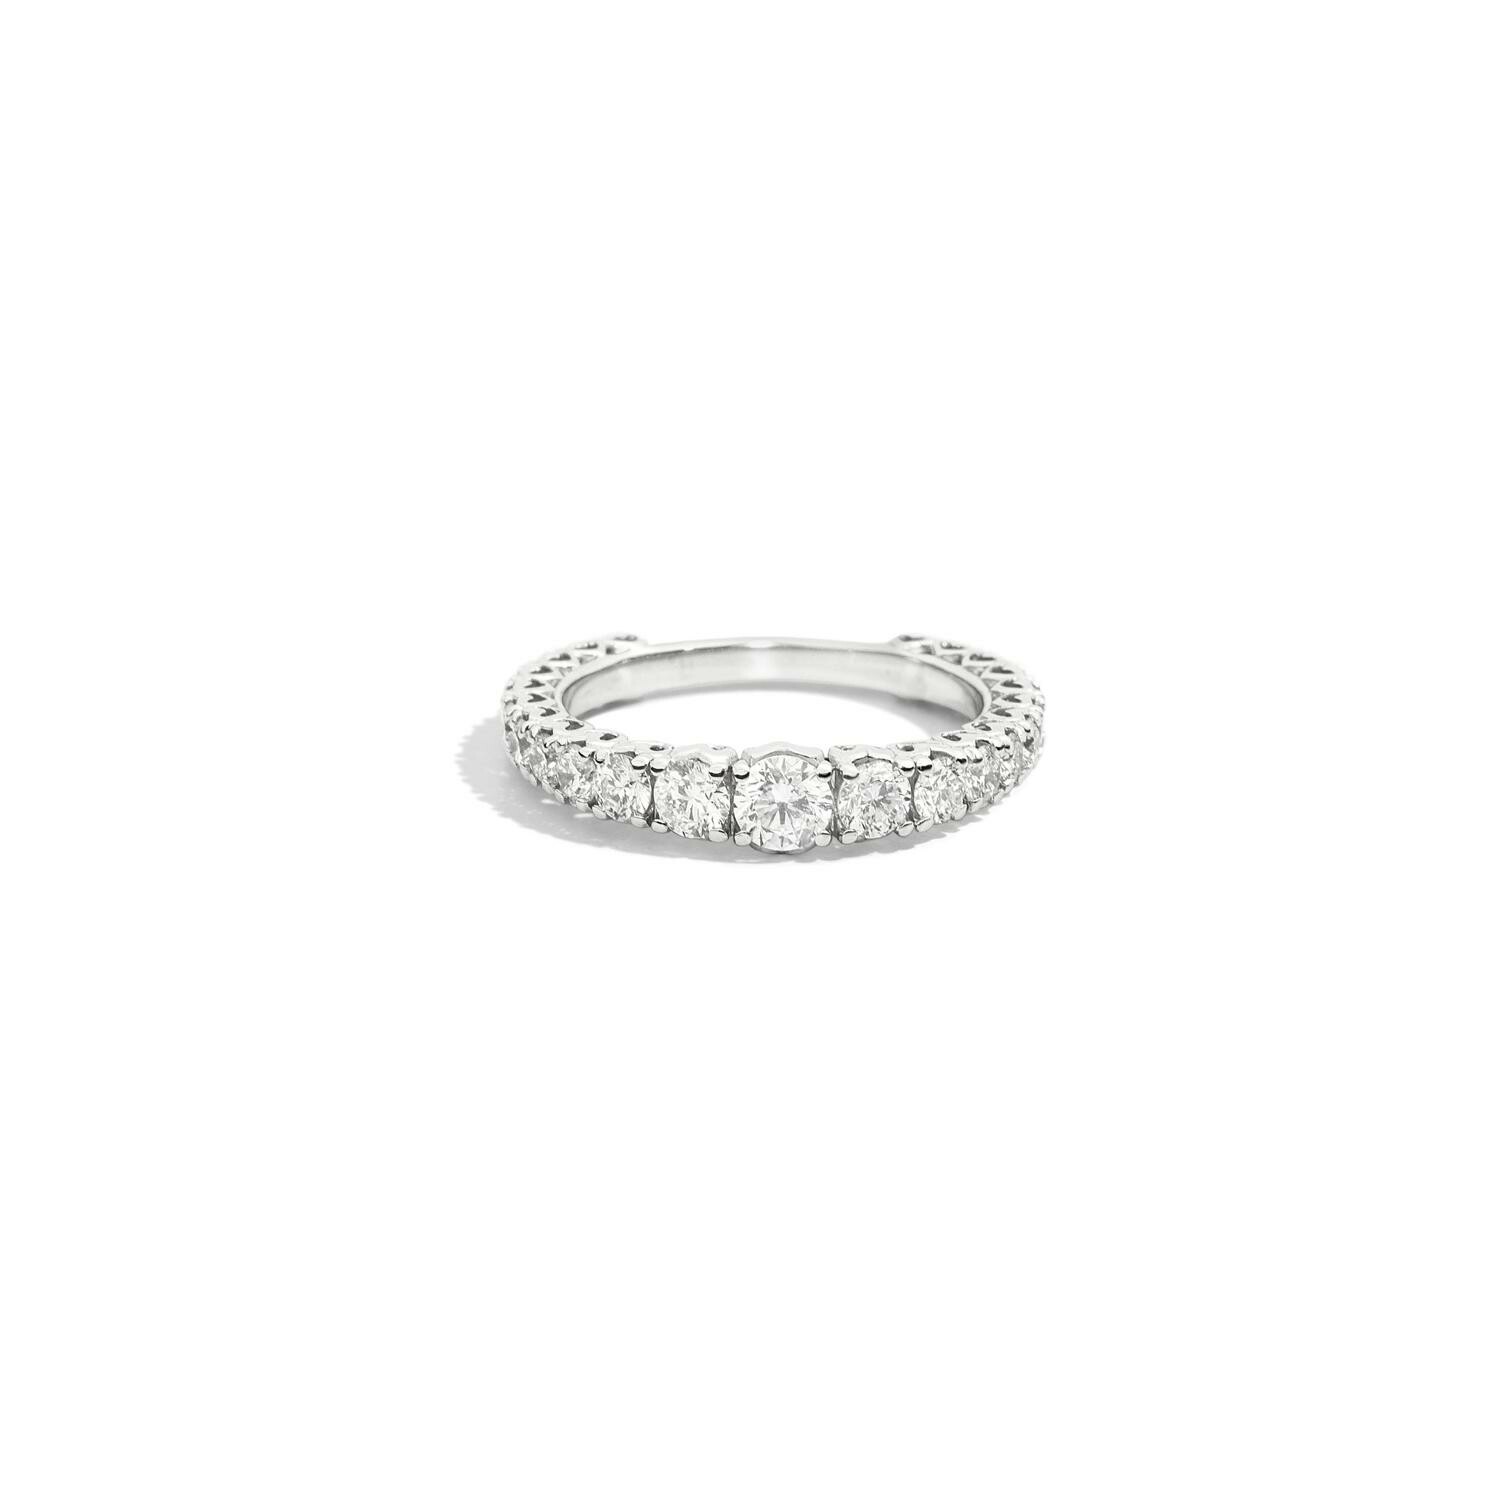 Purchase Recarlo Anniversary ring, white gold, brilliant cut diamonds